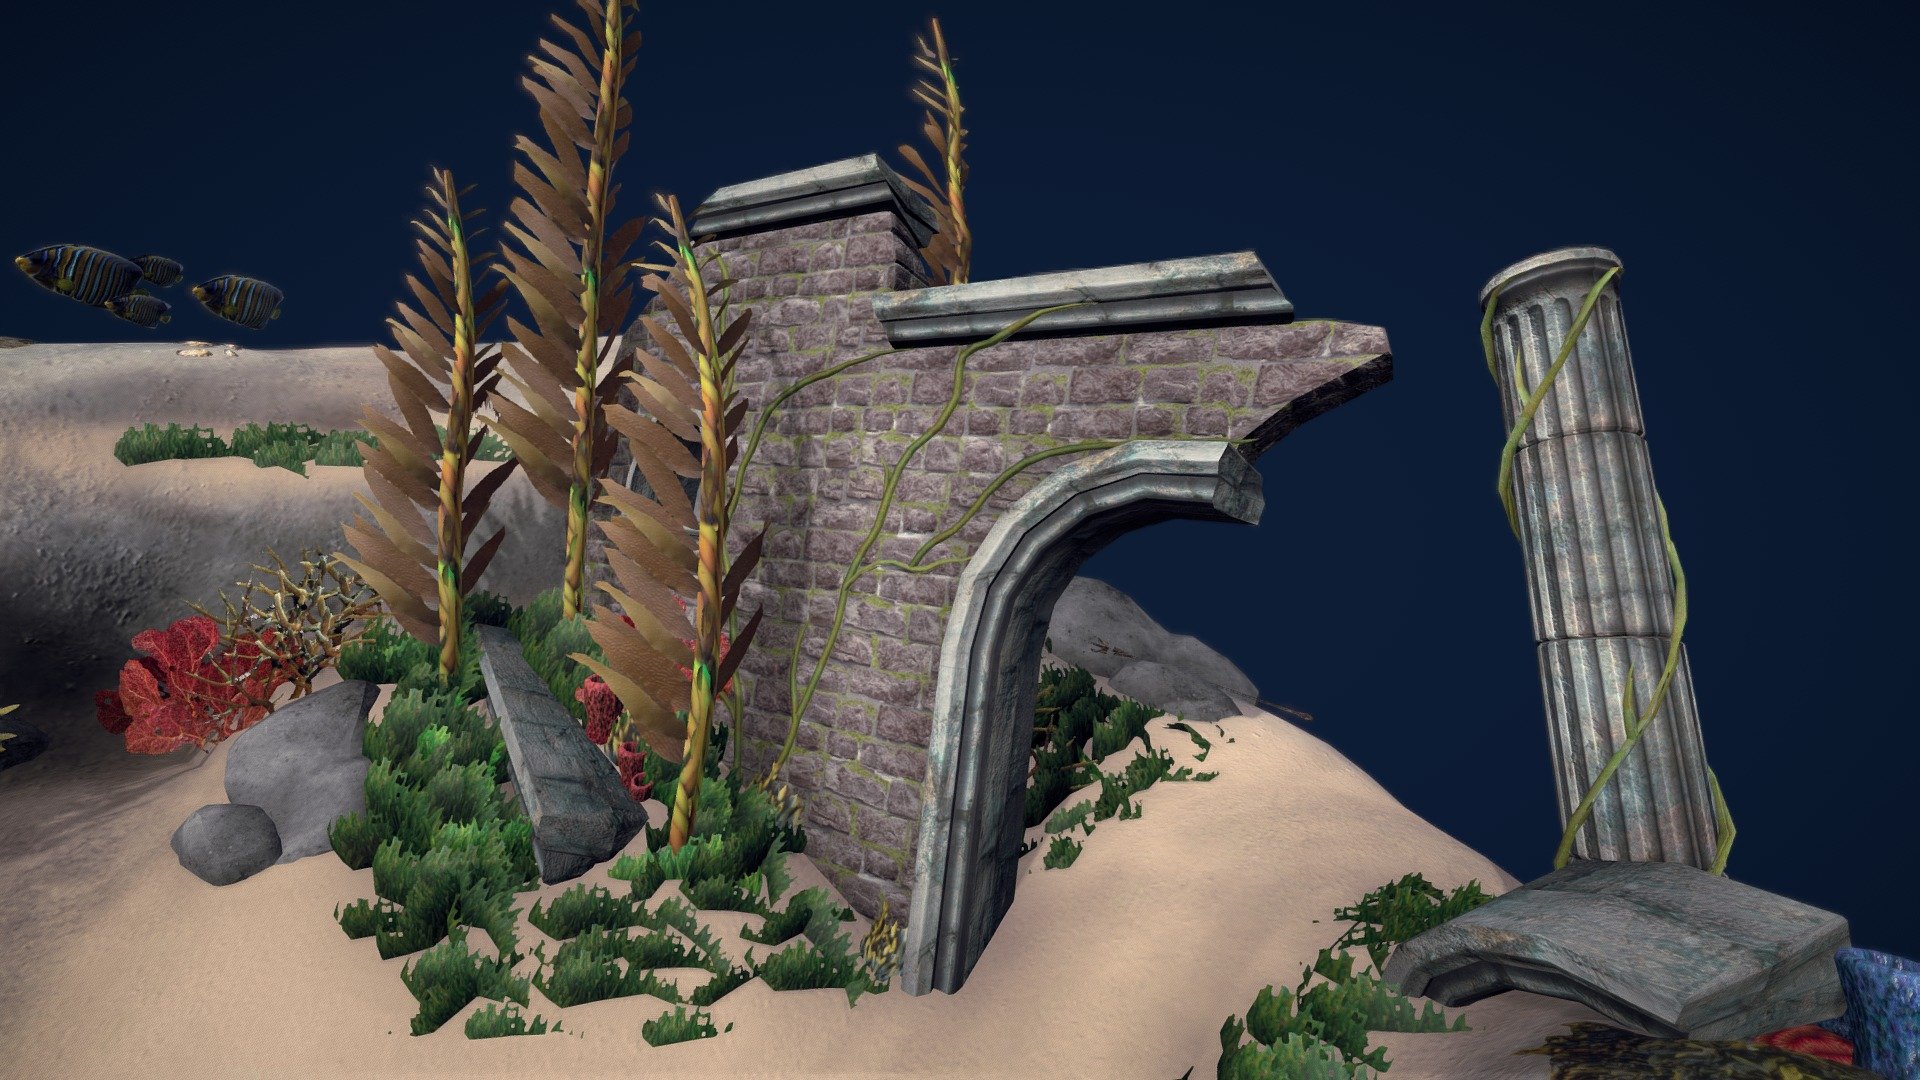 Teeming Atlantis - AS1 - Lloyd Harley - Download Free 3D model by lloydharley 3d model